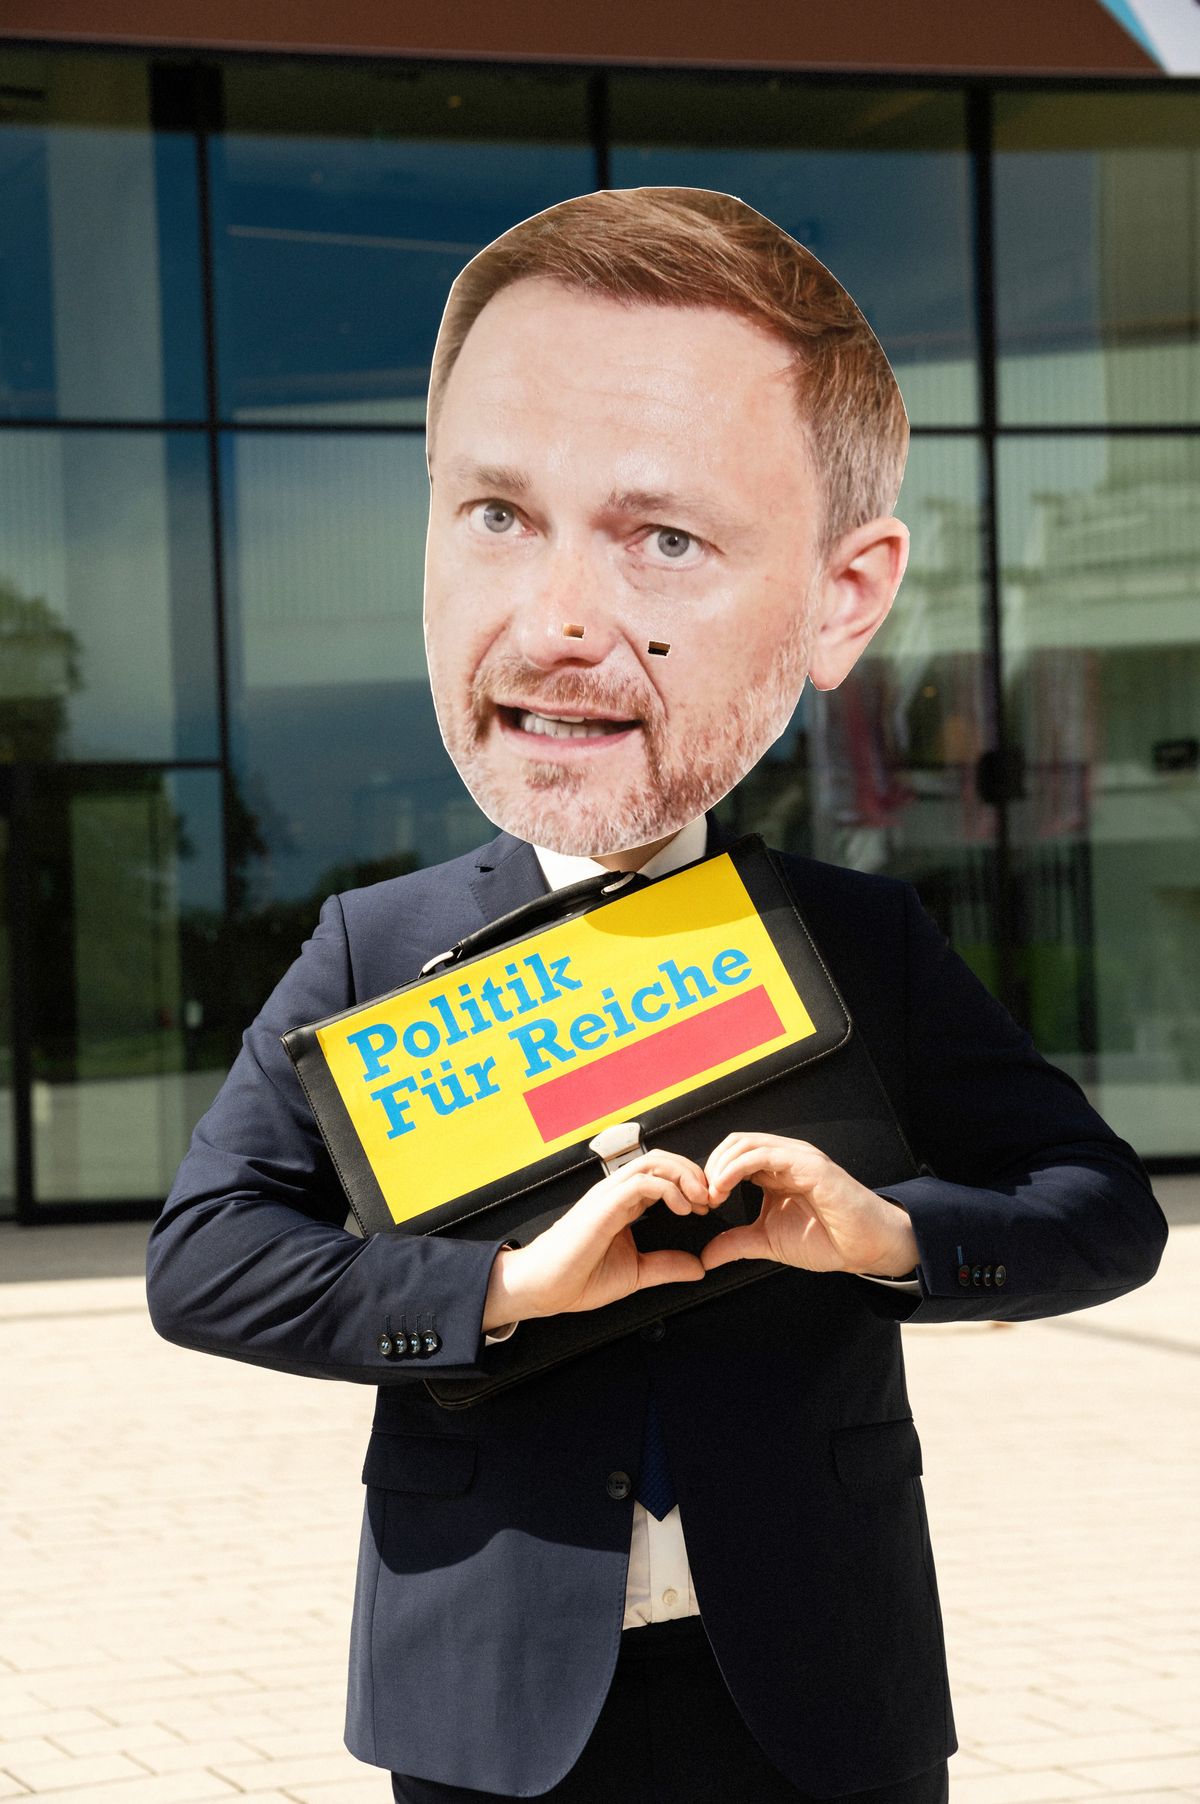 Ein Mensch mit Christian-Lindner-Maske hält eine Aktentasche, auf der im Stil des FDP-Logos "Politik für Reiche" steht, beide Hände sind so zusammengelegt, dass sie ein stilisiertes Herz bilden